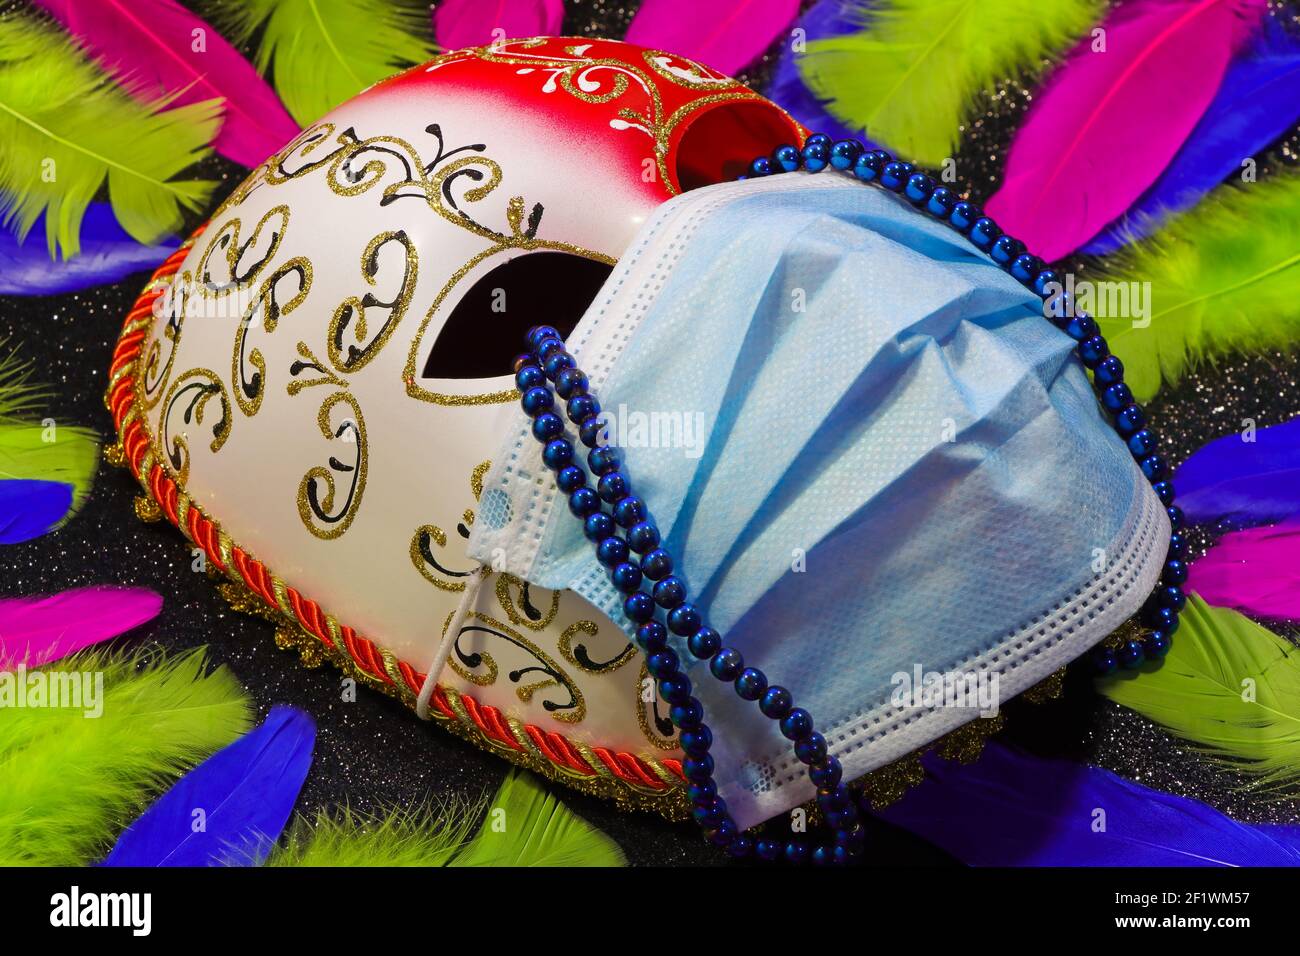 Masque de carnaval et masque chirurgical avec des larmes et des plumes de perles Banque D'Images